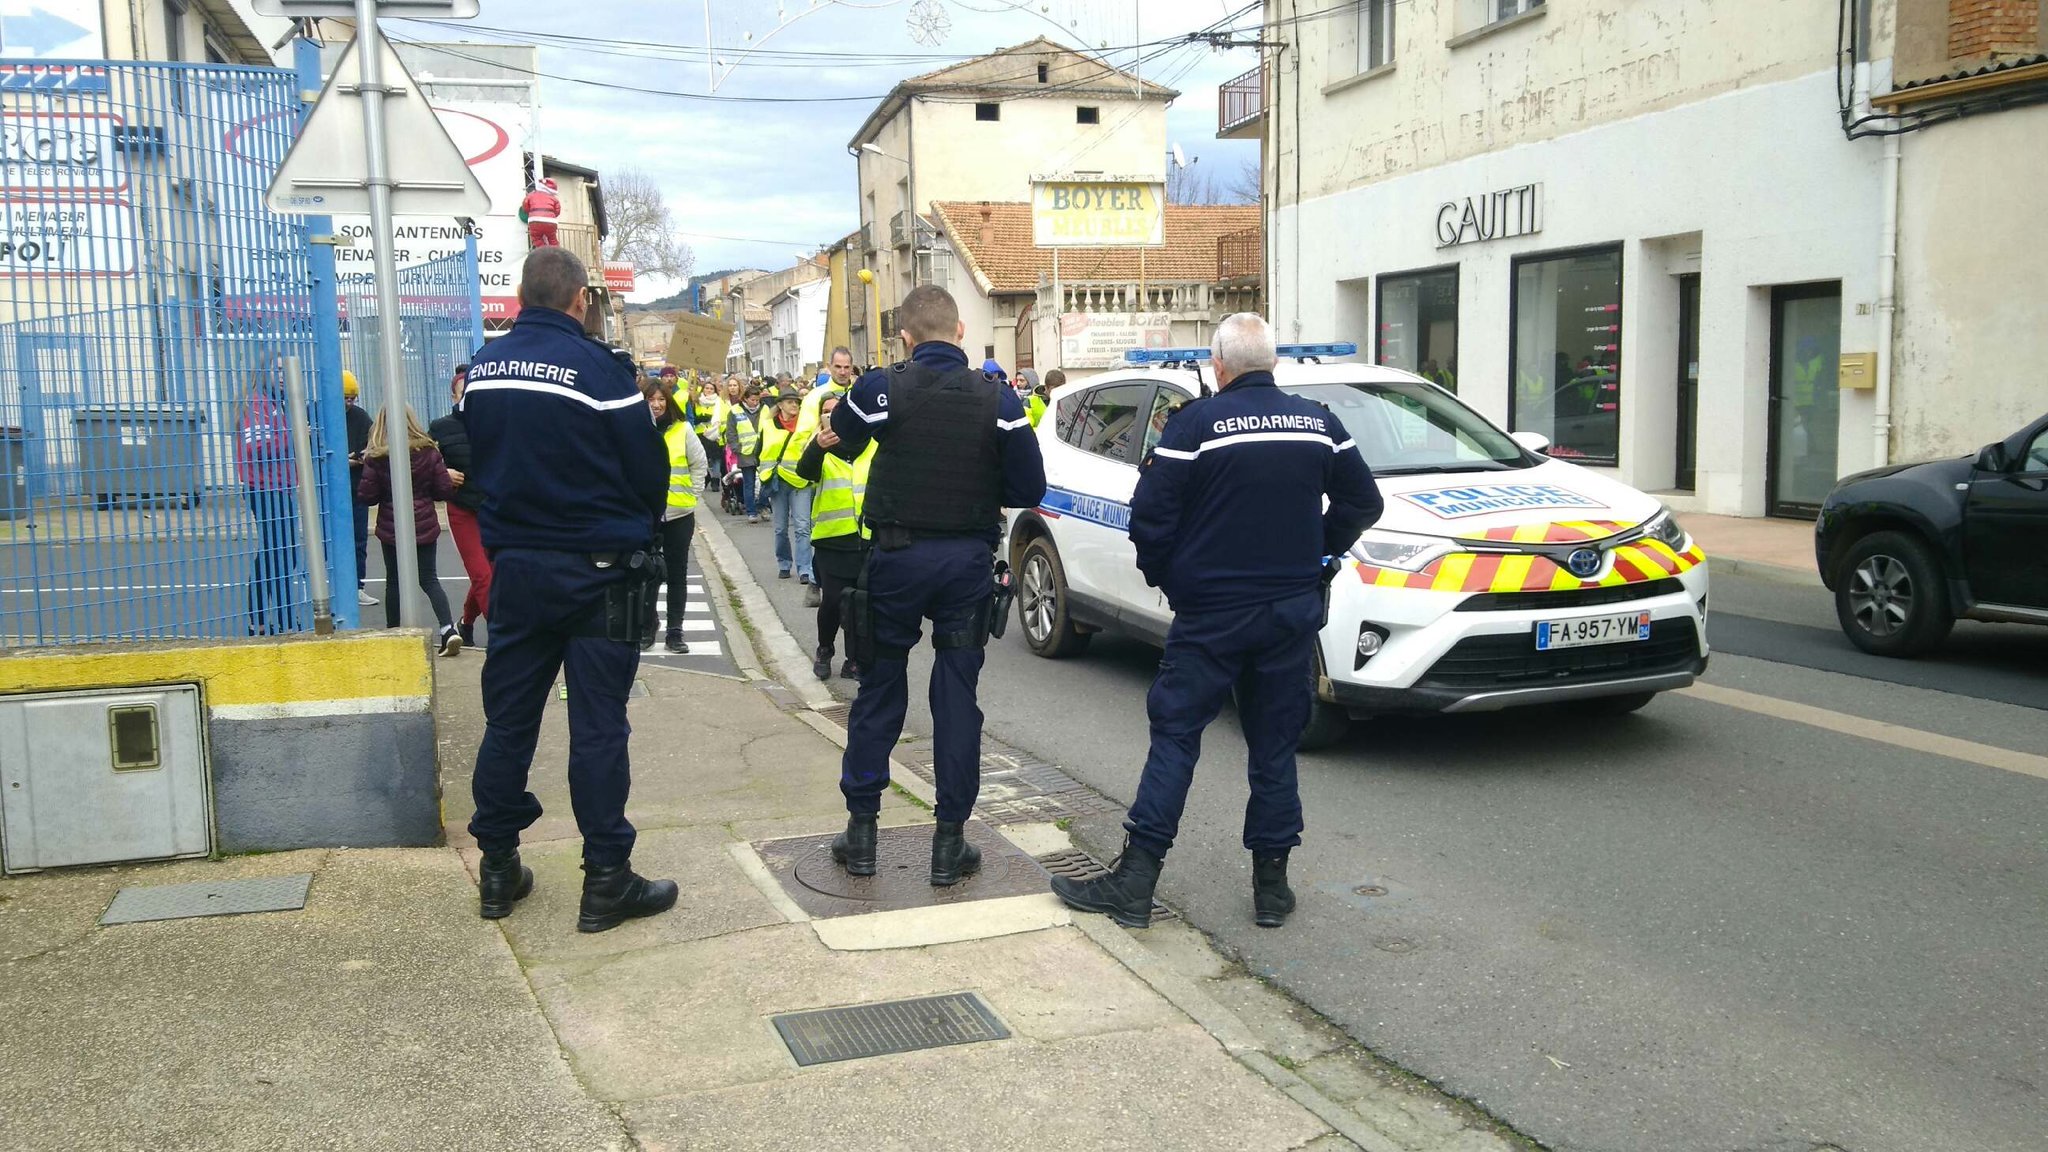 Gendarmerie de l'Hérault on Twitter: "A BÉDARIEUX ; sur l'A9 ; à BESSAN et  dans de nombreux autres points du département. https://t.co/qrCwM6WQxp" /  Twitter